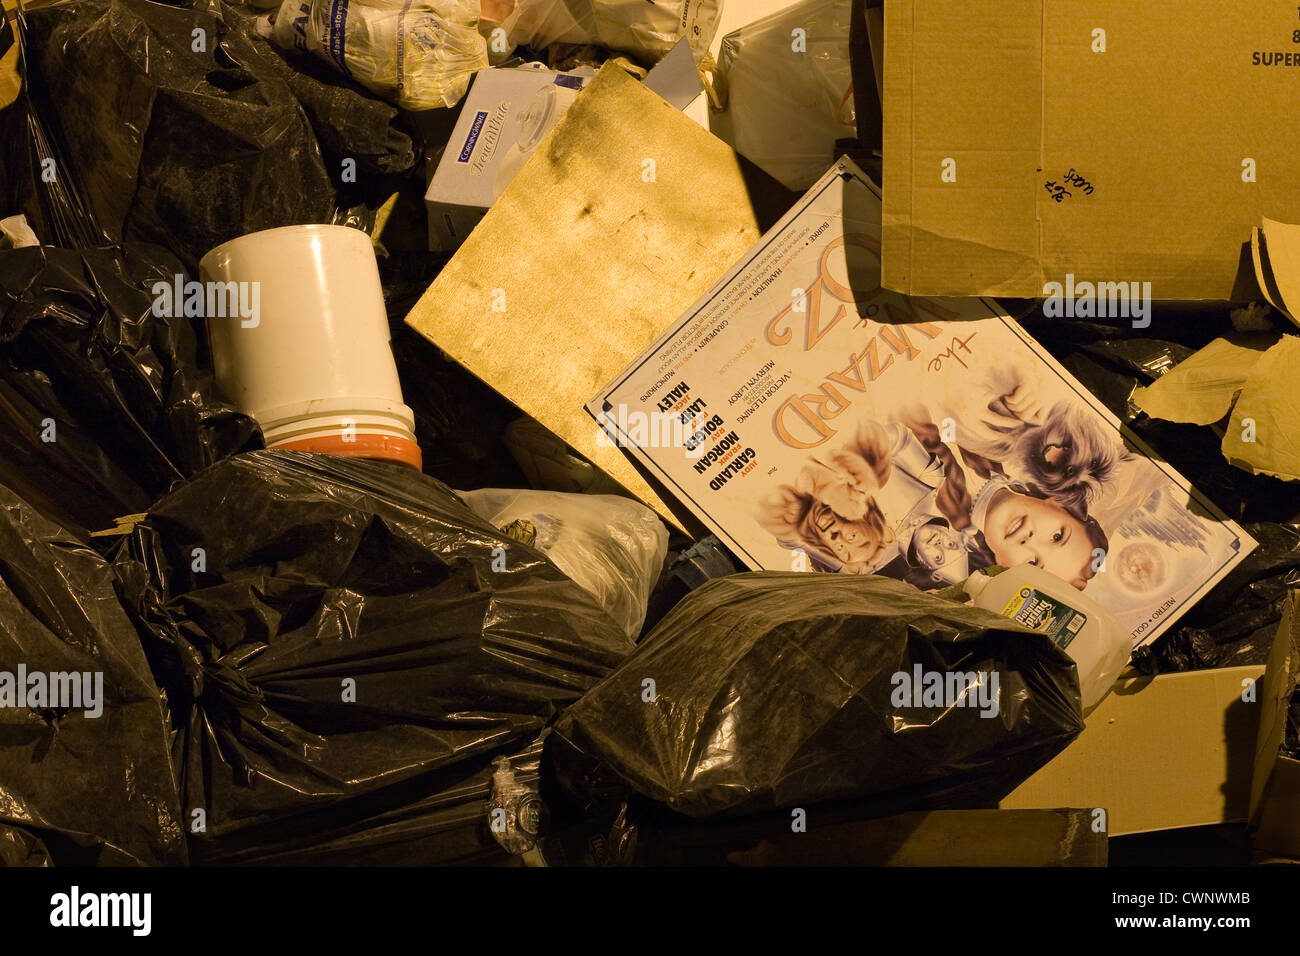 Der Zauberer von OZ Film-Plakat gemischt mit Müll und Abfall Stockfoto